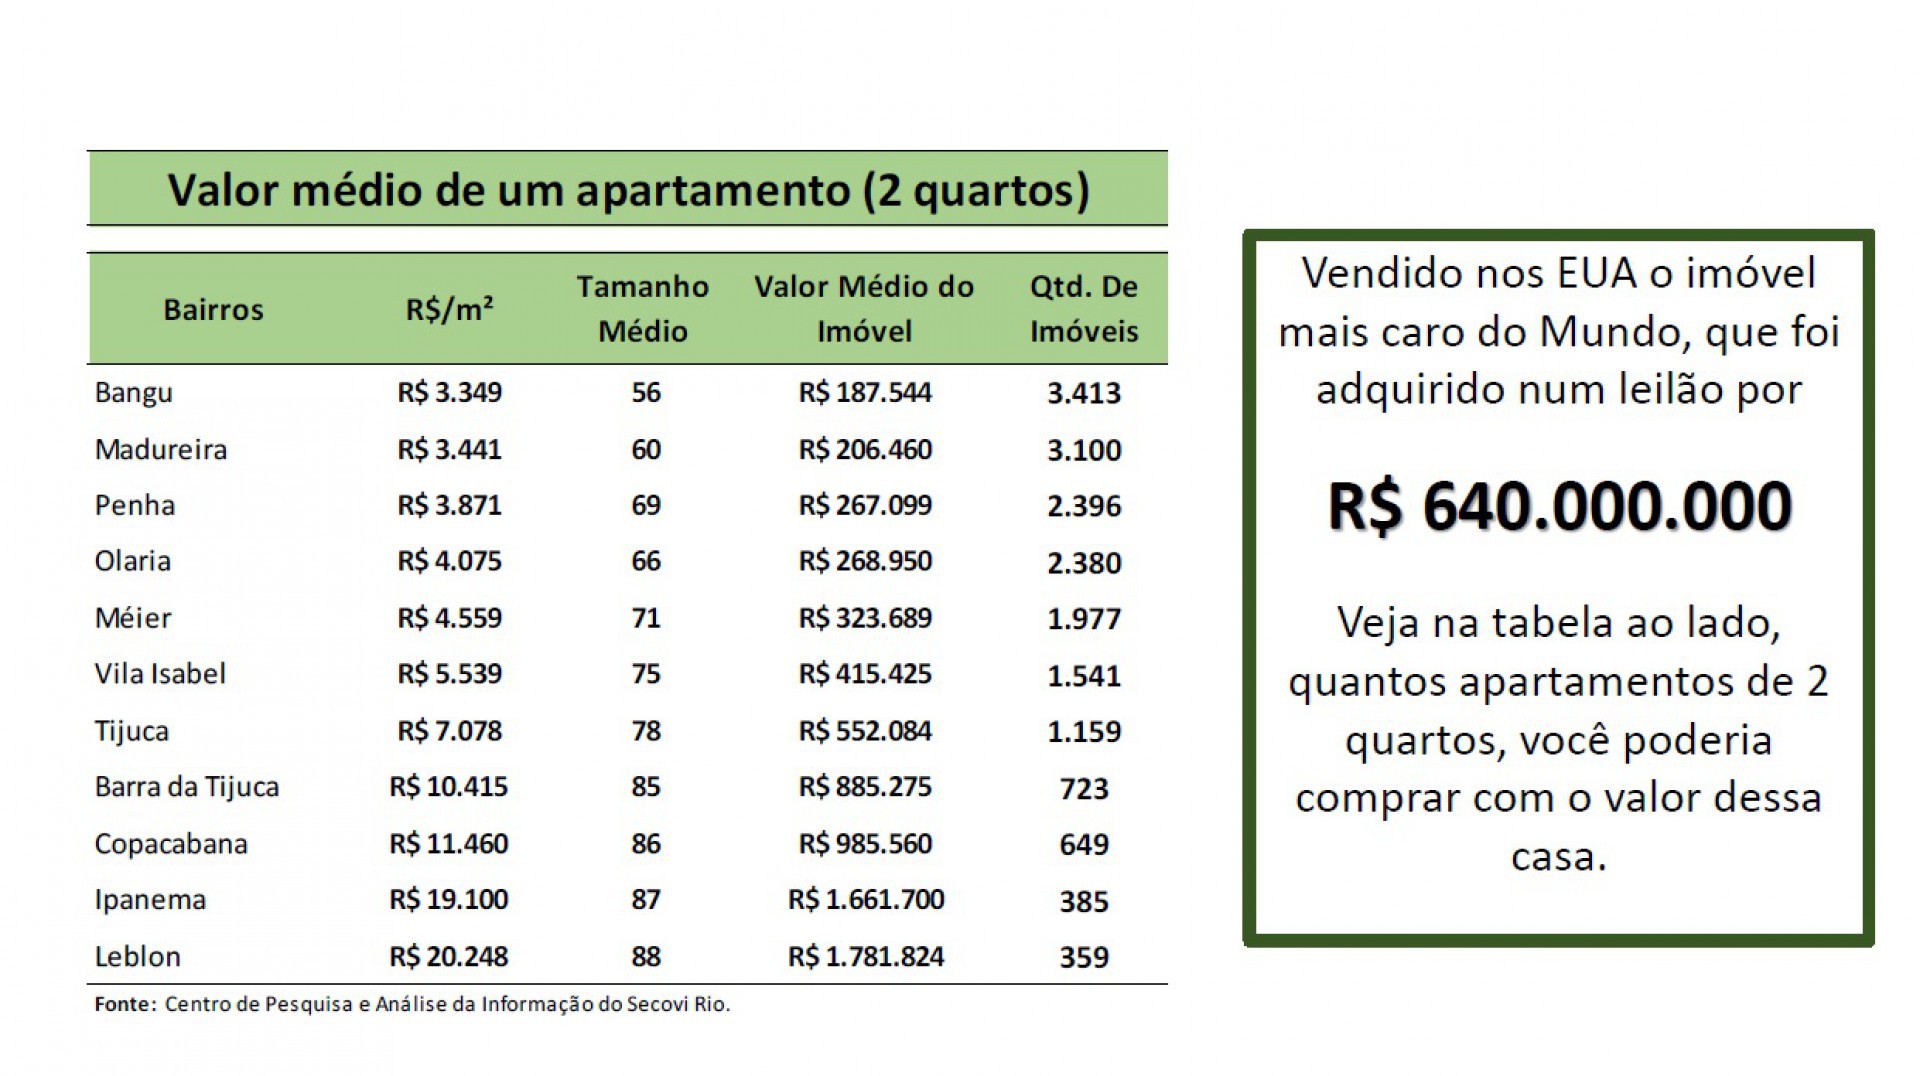 Em Bangu é possível comprar 3.413 apartamentos de dois quartos com R$ 640 milhões - Secovi